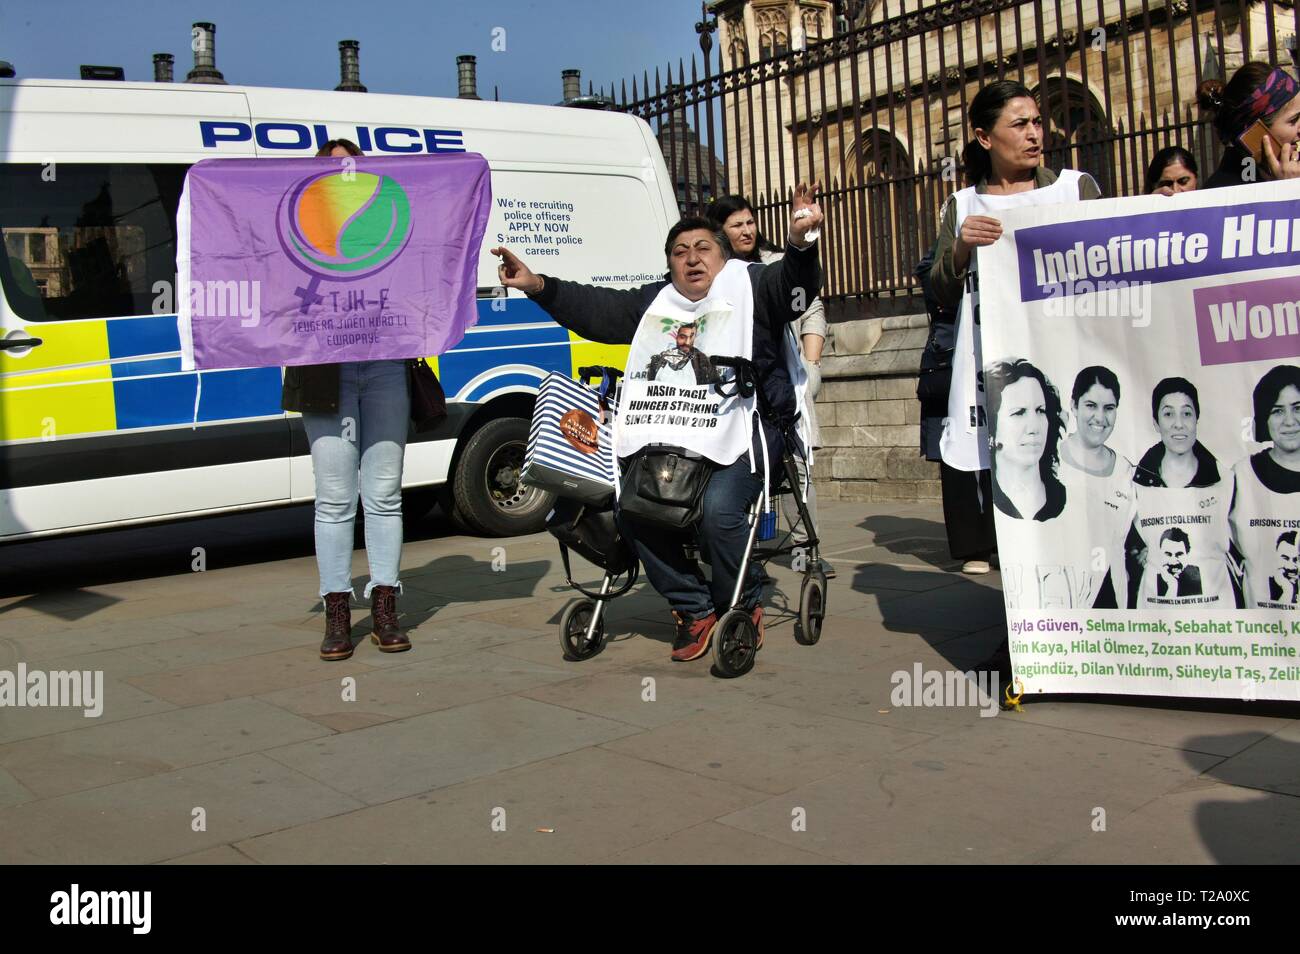 Londres, Royaume-Uni. 29 mars 2019, les manifestants devant les Chambres du Parlement de Westminster, mettre en lumière la situation de prisonnier politique turque Leyla Guven qui est actuellement en grève de la faim en Turquie. © Martin Foskett/Knelstrom Ltd/Alamy Live News Banque D'Images